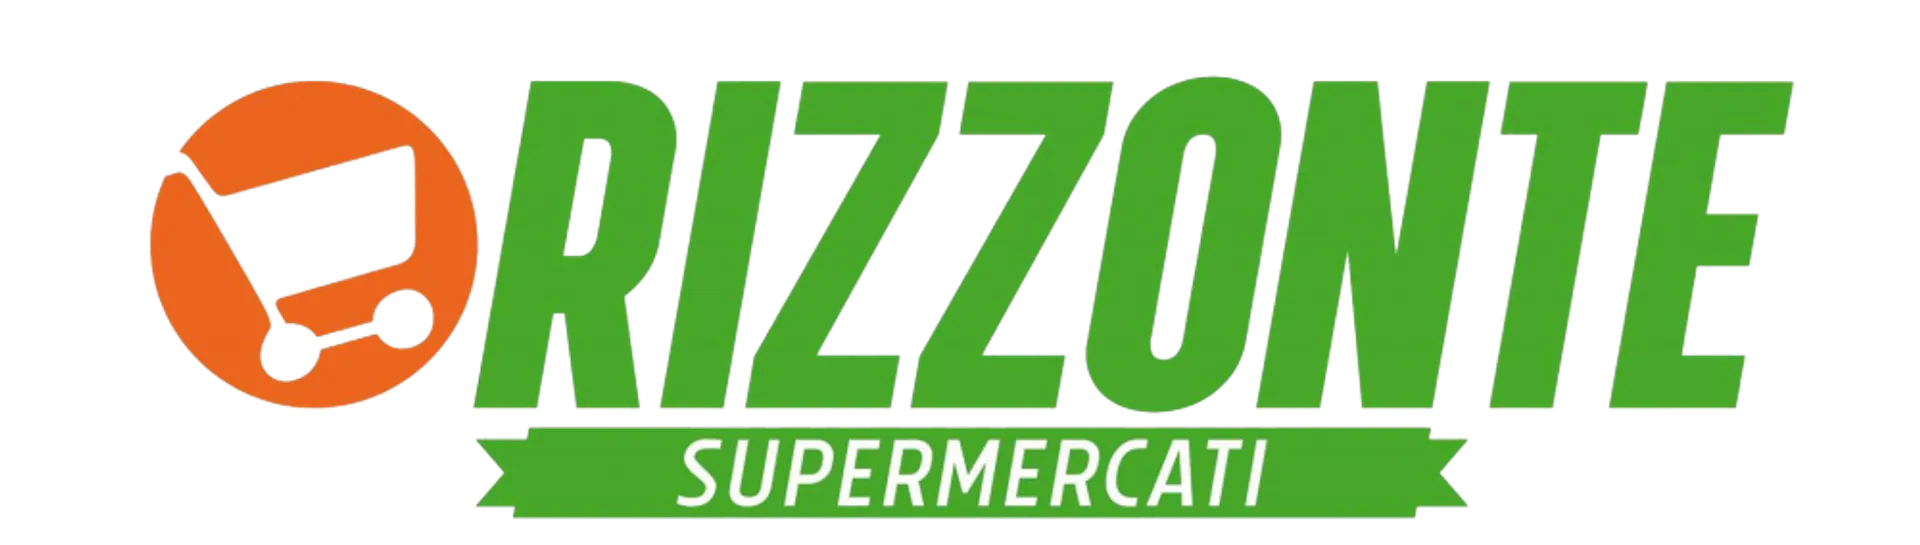 ORIZZONTE SUPERMERCATI logo